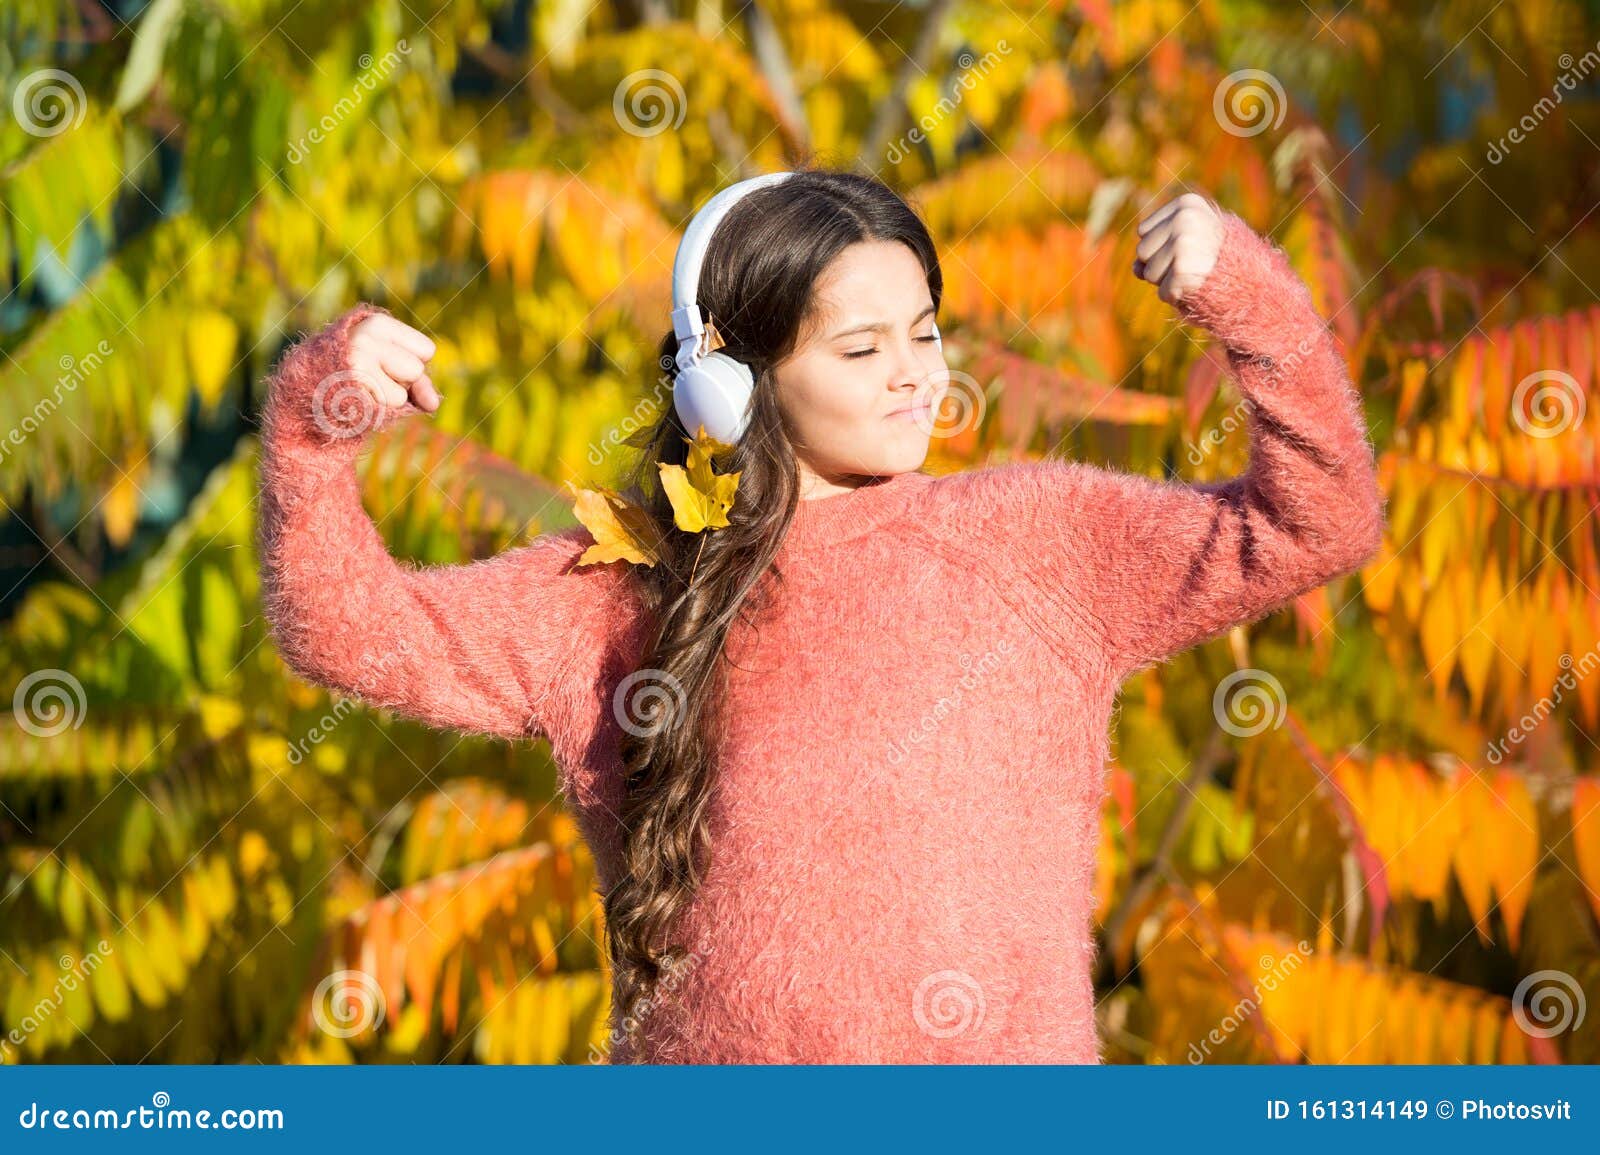 Музыка Для Осенних Фото